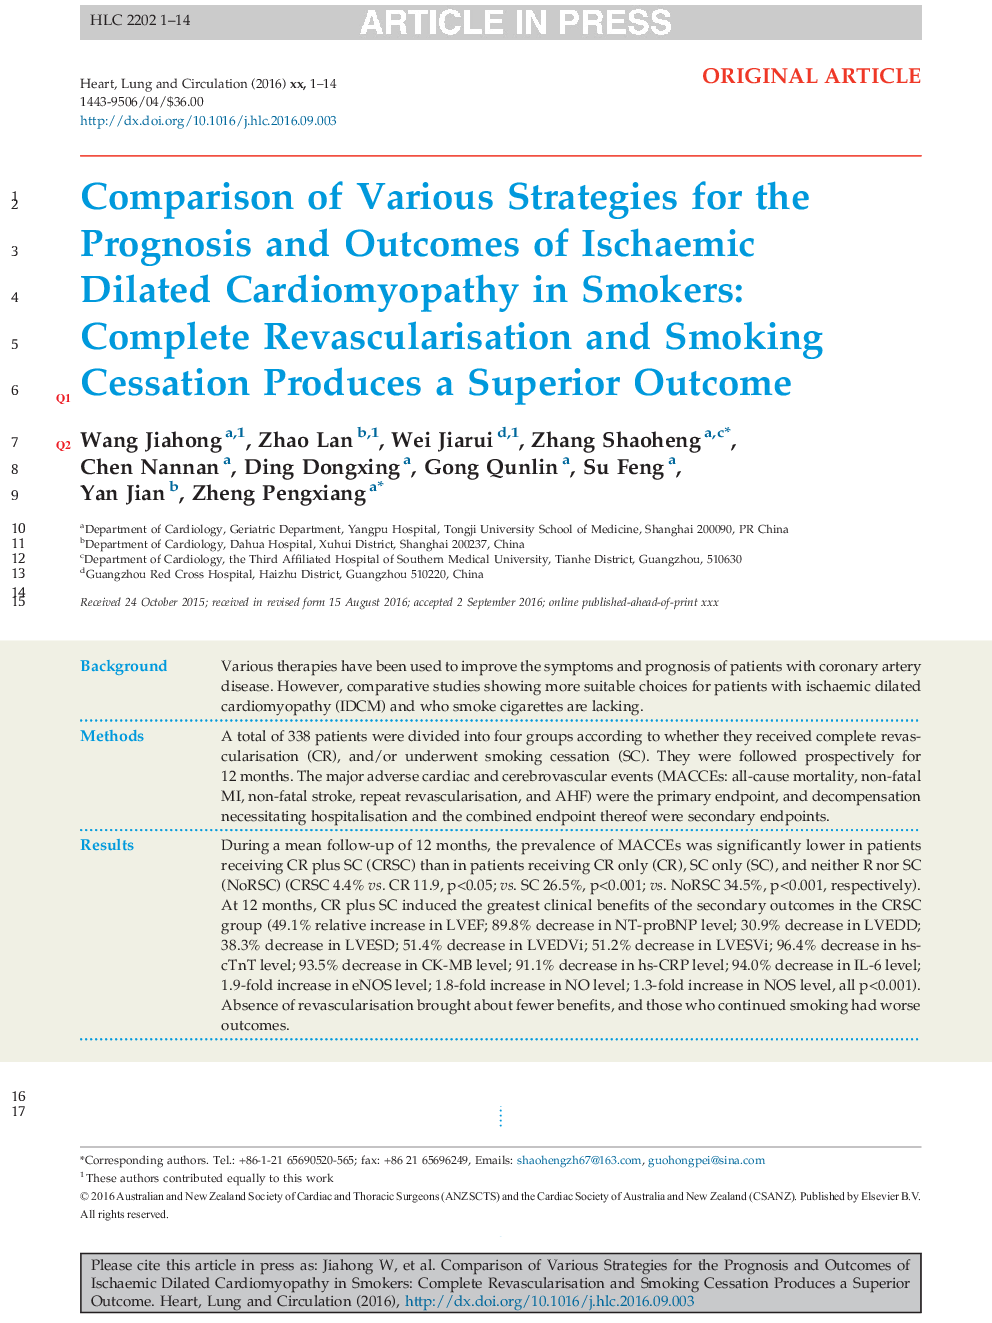 مقایسه راهکارهای مختلف پیش آگهی و پیامدهای کاردیومیوپاتی کلیه ایسکمیک در افراد سیگاری: واکنش مجدد و کاهش سیگار کامل یک نتیجه برتر 